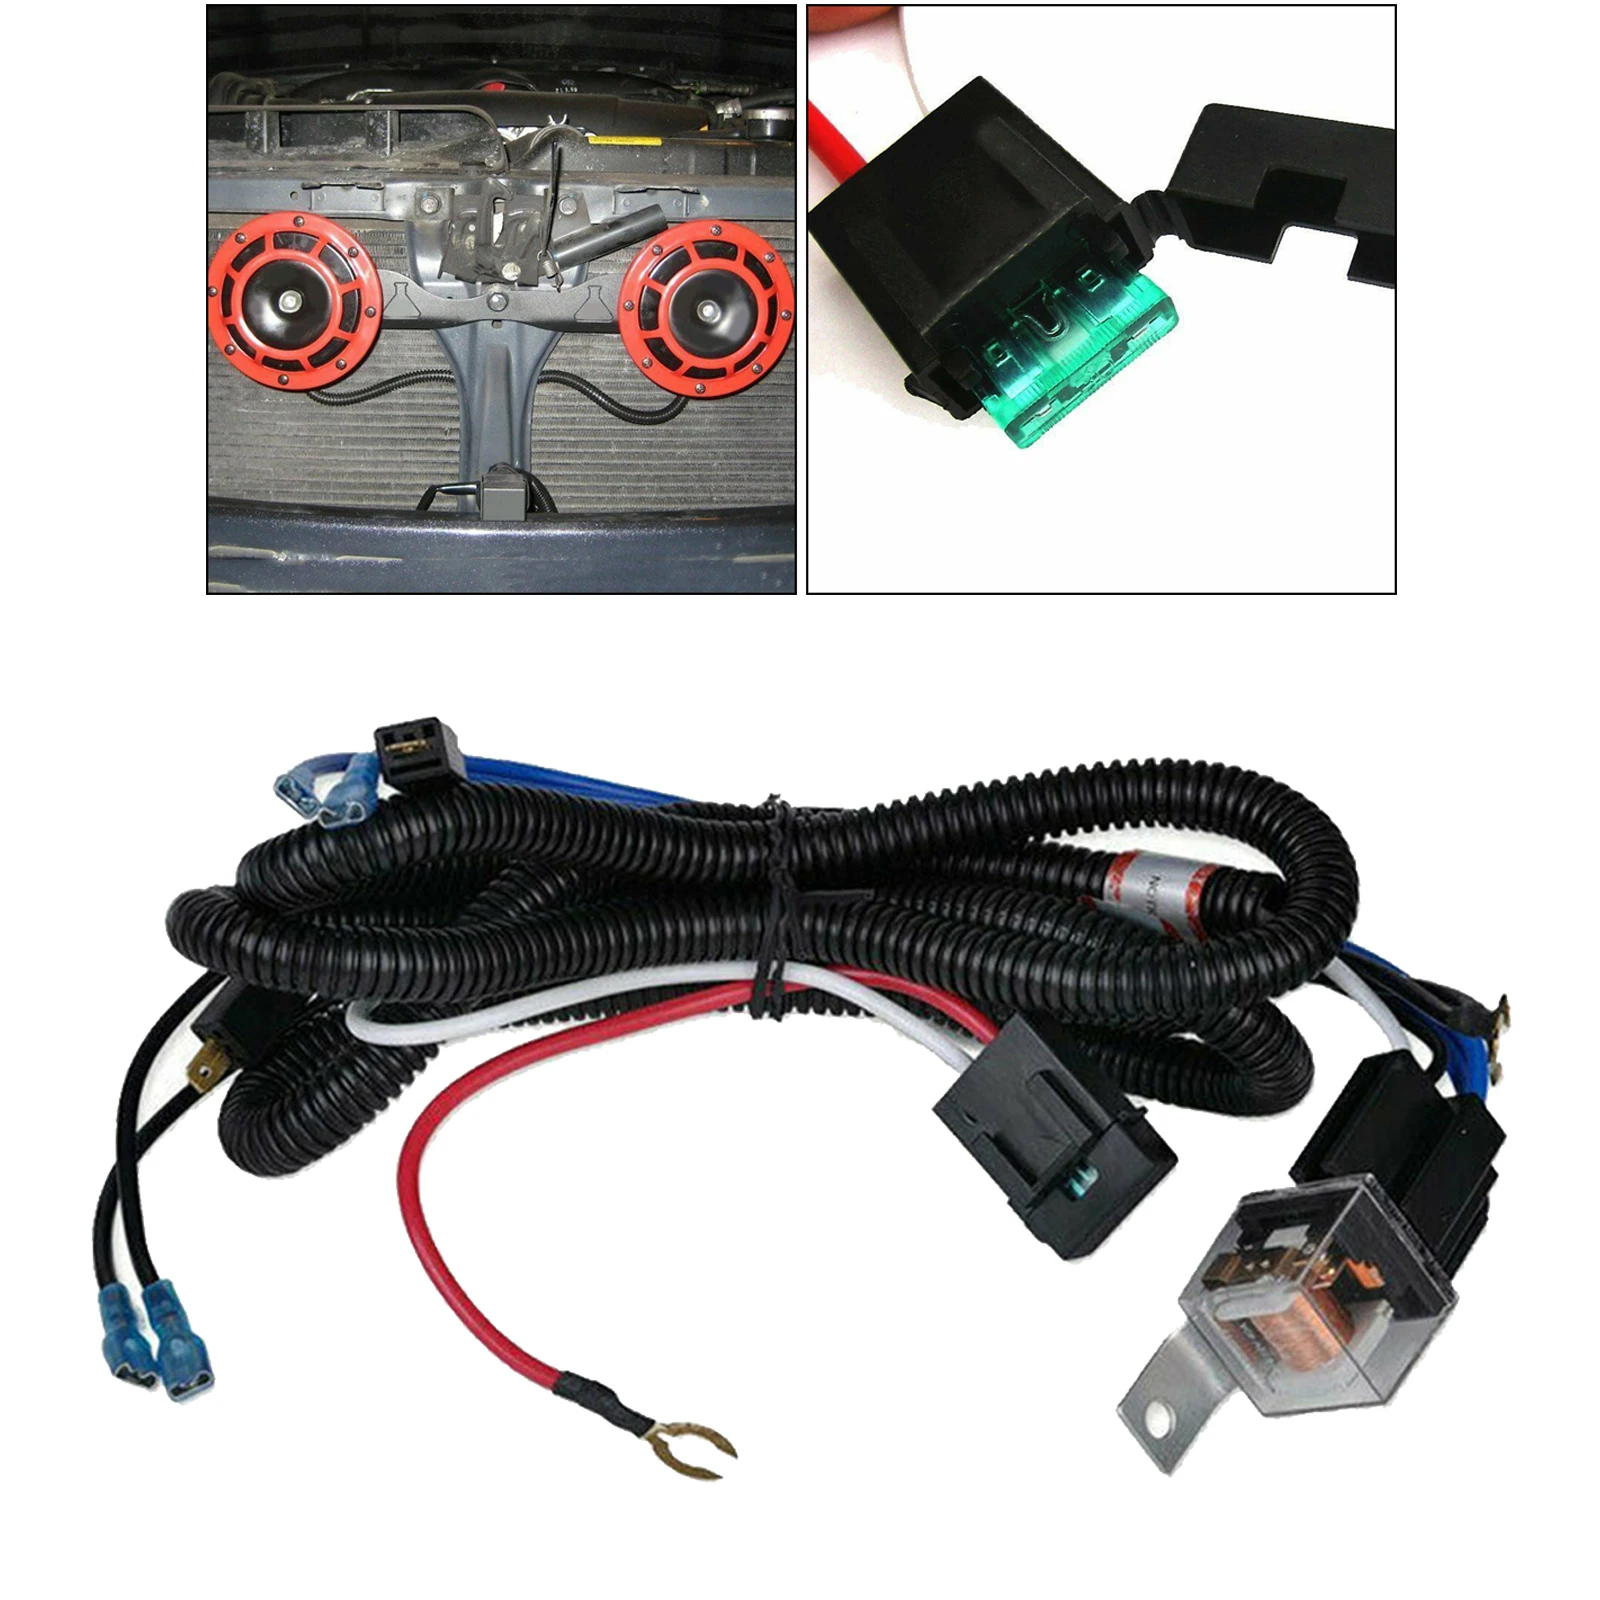 12V/24V Horn Wiring Harness Relay Kit For Car Truck Grille Mount Blast Tone Horns